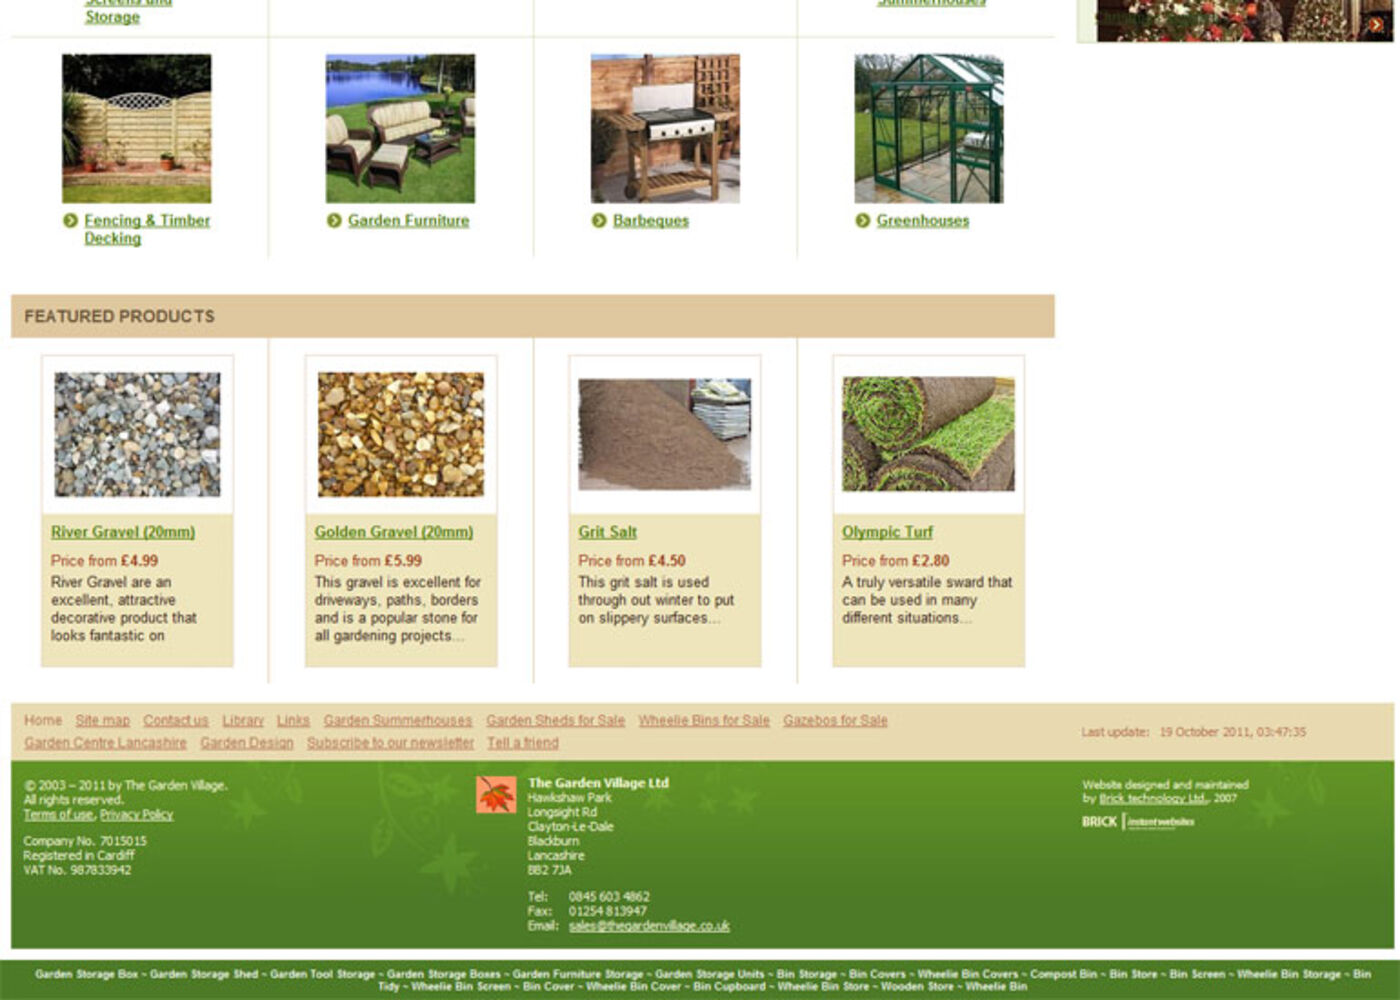 The Garden Village Homepage footer